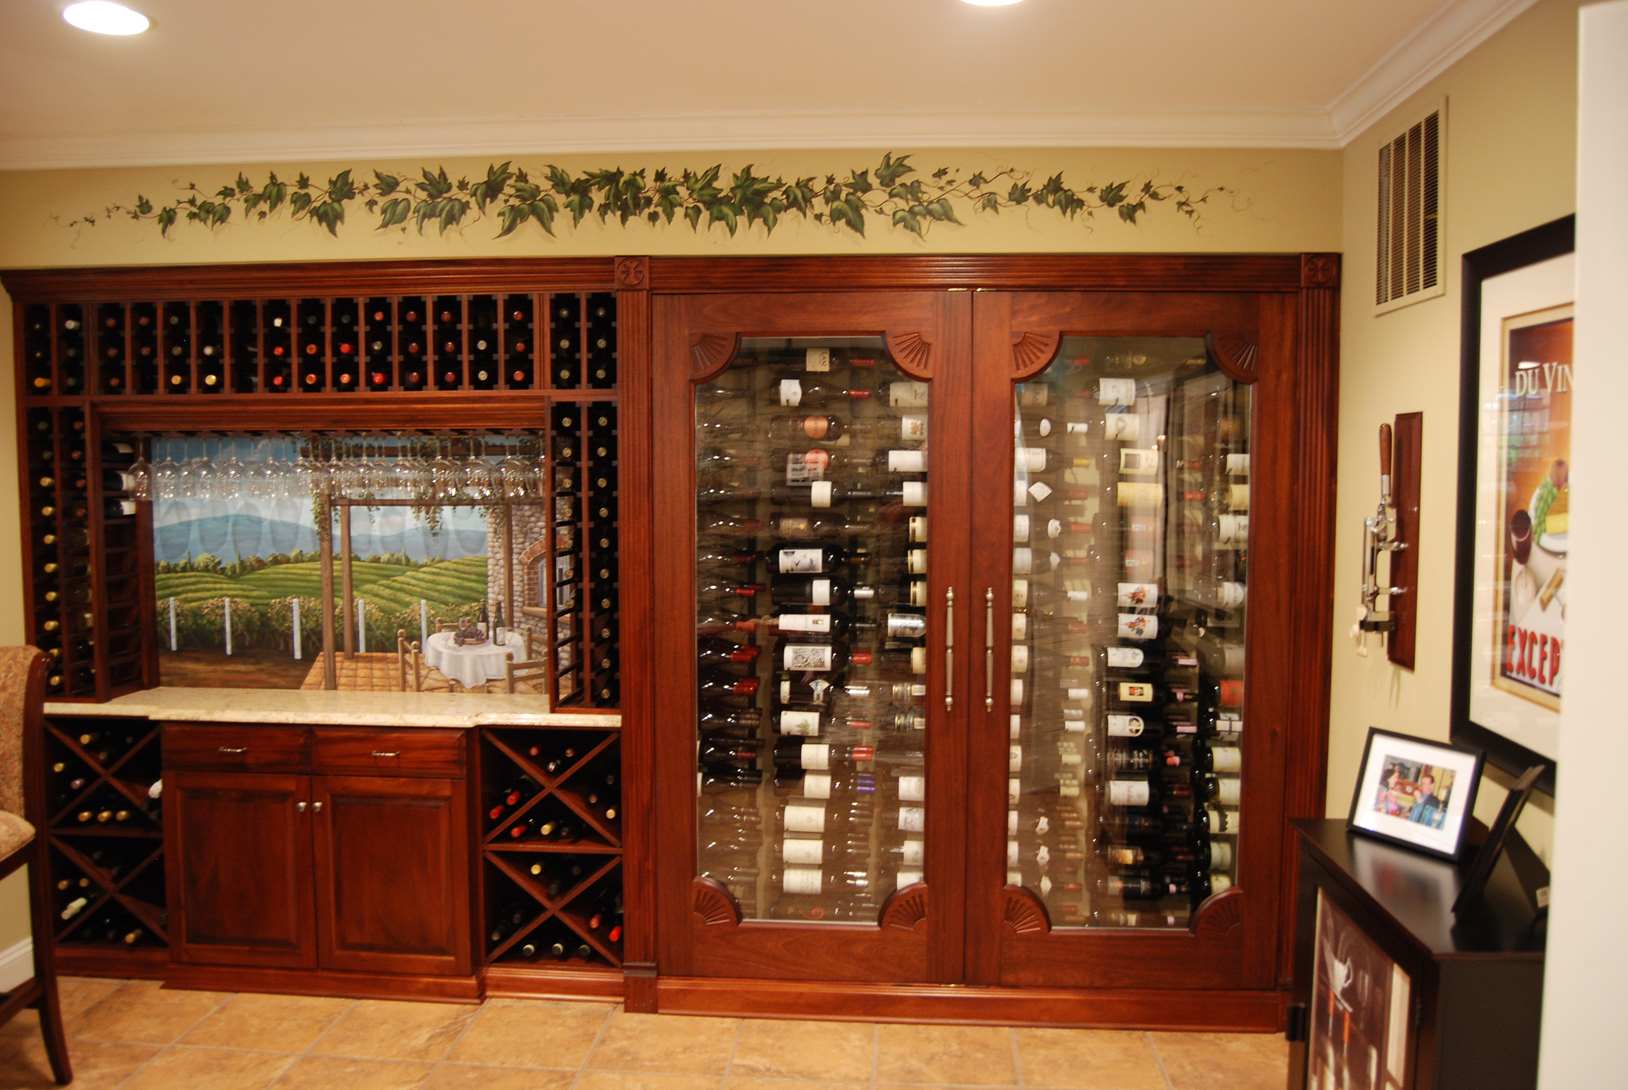 Wine-Cellar-Wall-Window-and-Vines-Mural-1.jpg